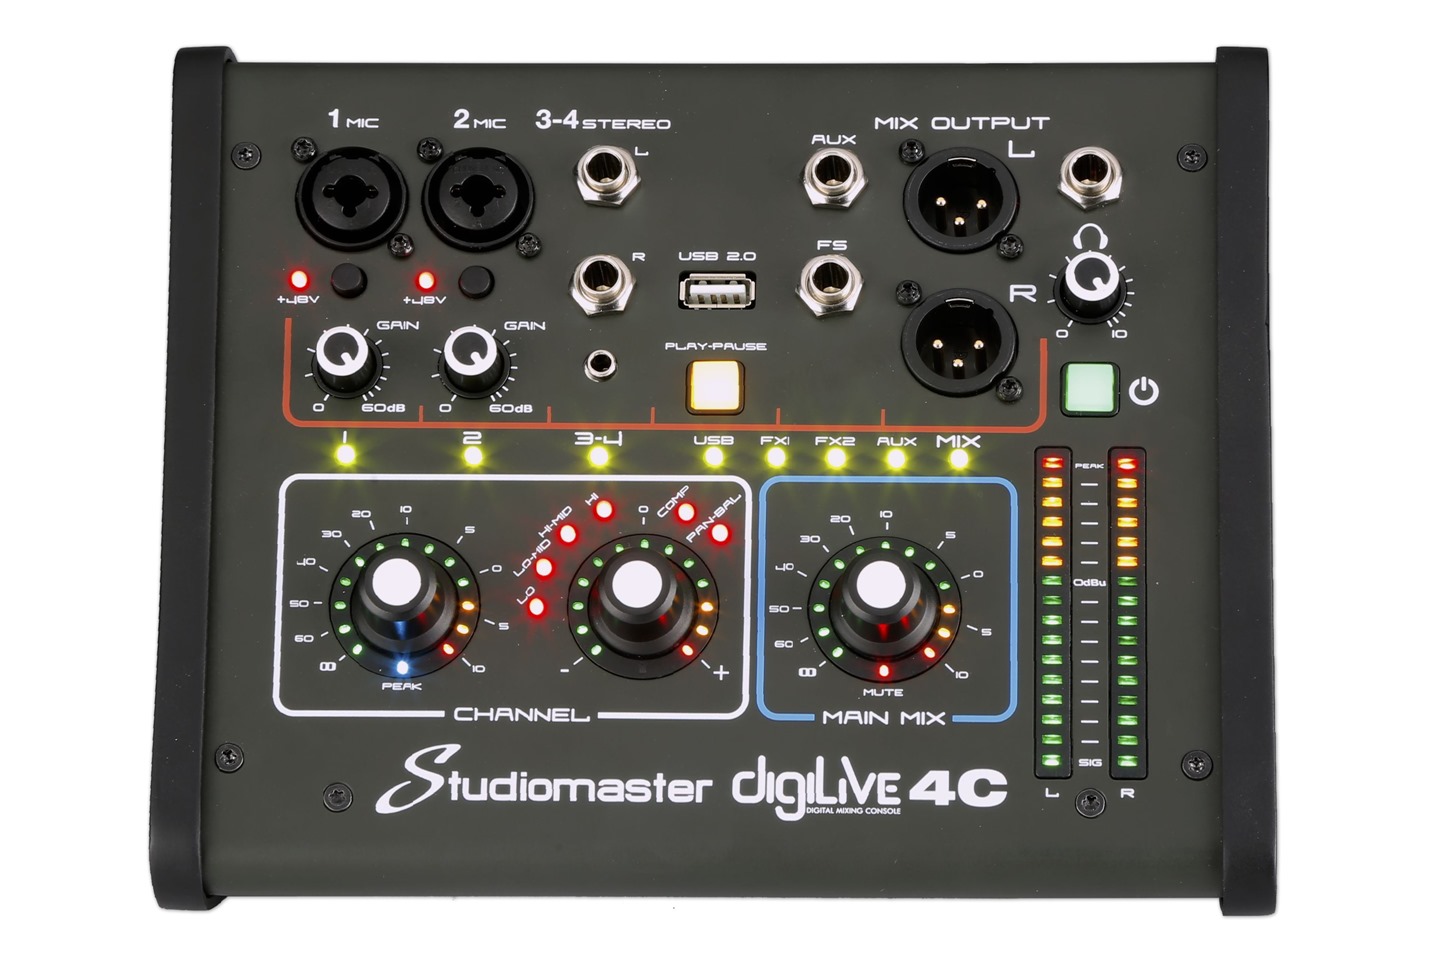 Studiomaster Digilive 4C front